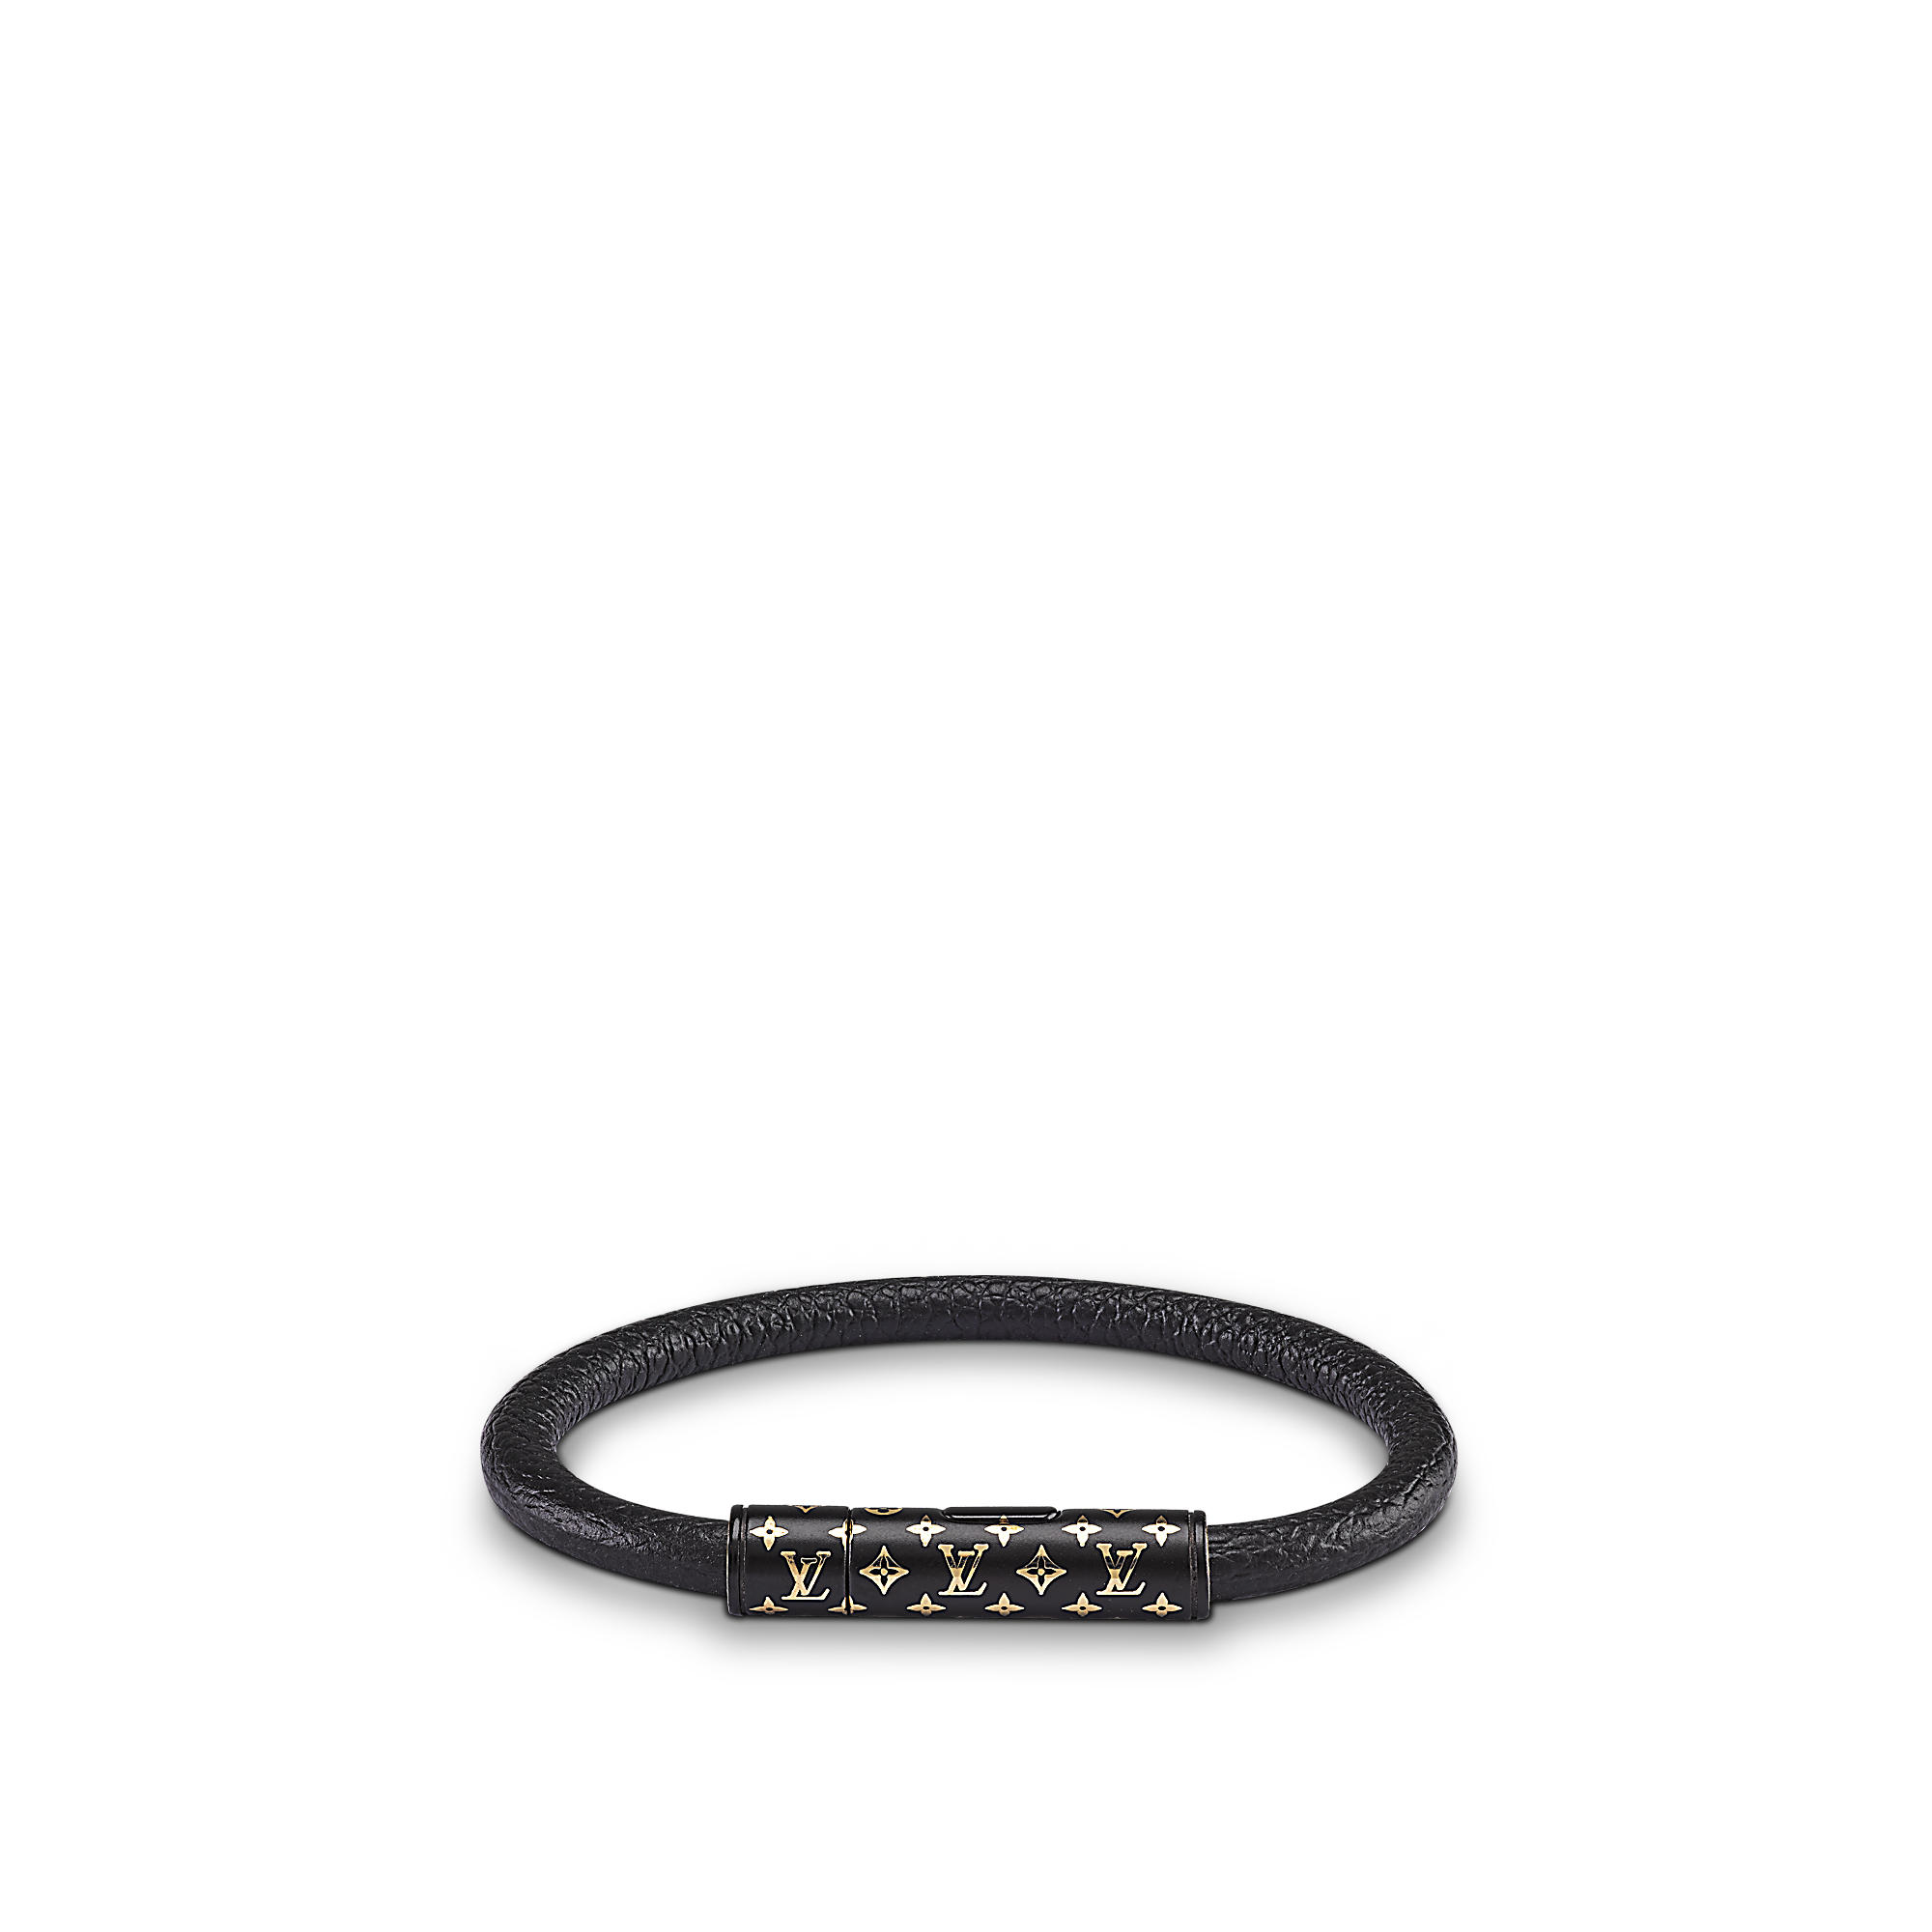 Louis Vuitton Leather Bracelet Black